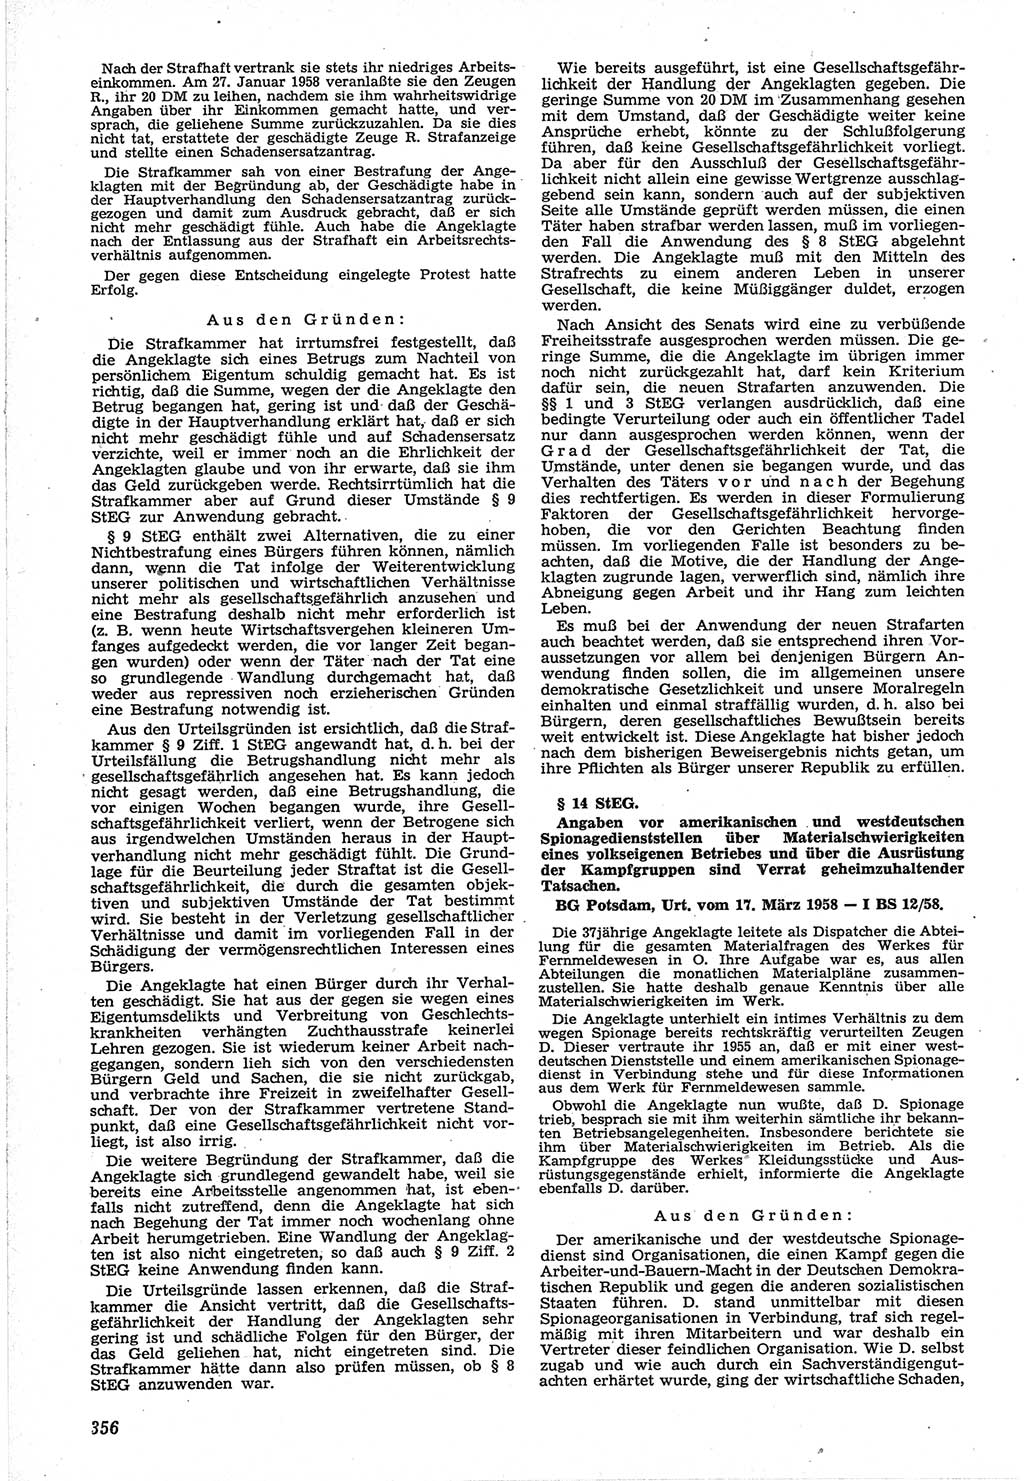 Neue Justiz (NJ), Zeitschrift für Recht und Rechtswissenschaft [Deutsche Demokratische Republik (DDR)], 12. Jahrgang 1958, Seite 356 (NJ DDR 1958, S. 356)